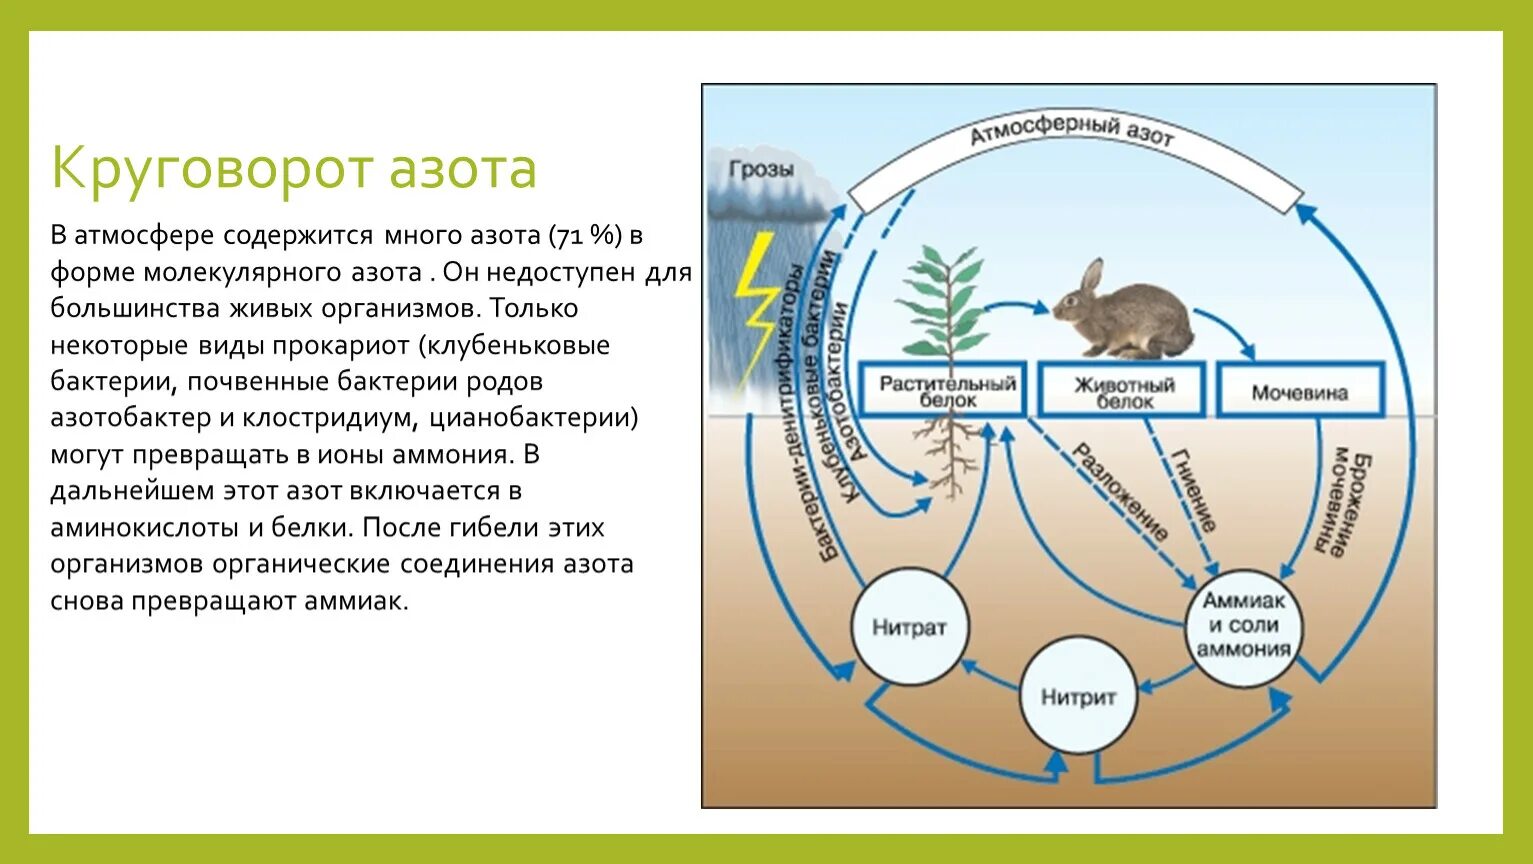 Биологический круговорот в биосфере. Схема биогеохимического круговорота в природе. Биологический цикл азота. Биогеохимический цикл азота схема. Азот в составе живых организмов